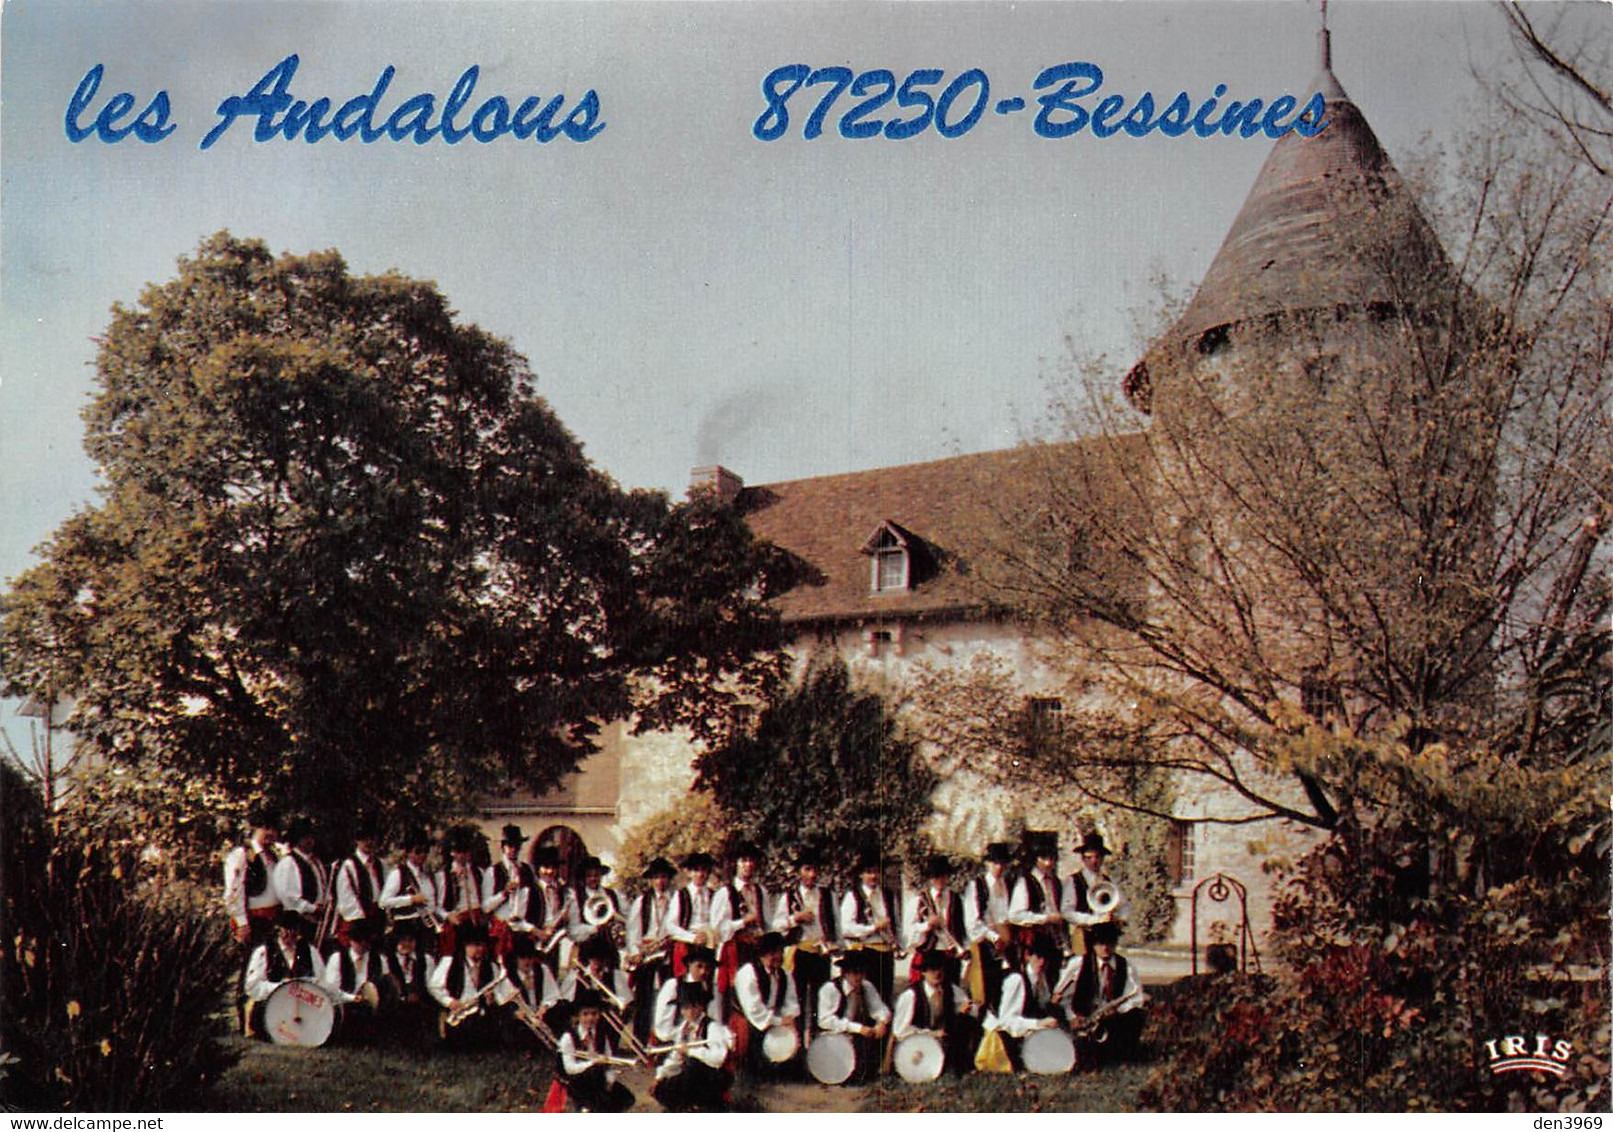 BESSINES - Union Musicale Les Andalous - Fanfare, Orchestre - Jean-Louis Cacaud, Place Du Champ-de-Foire - Bessines Sur Gartempe